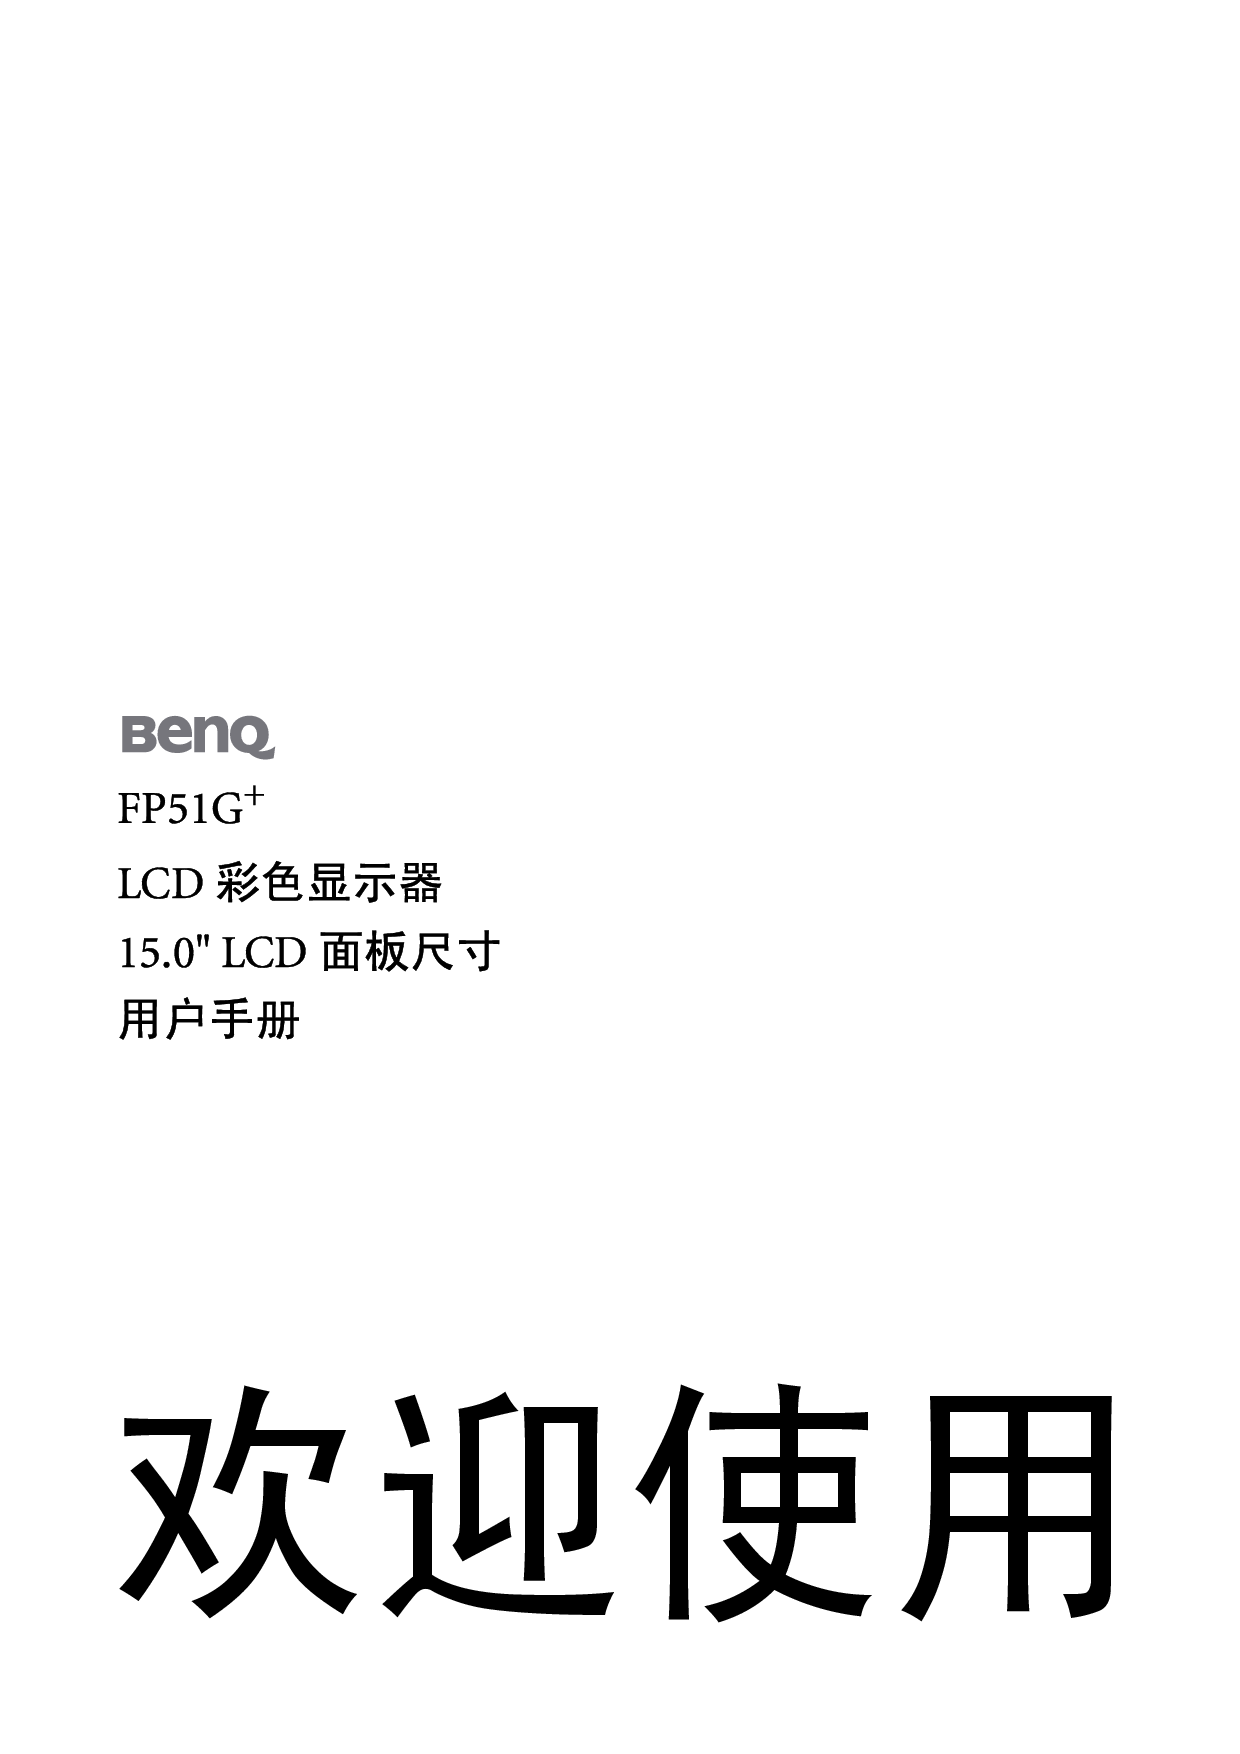 明基 Benq FP51G+ 使用手册 封面